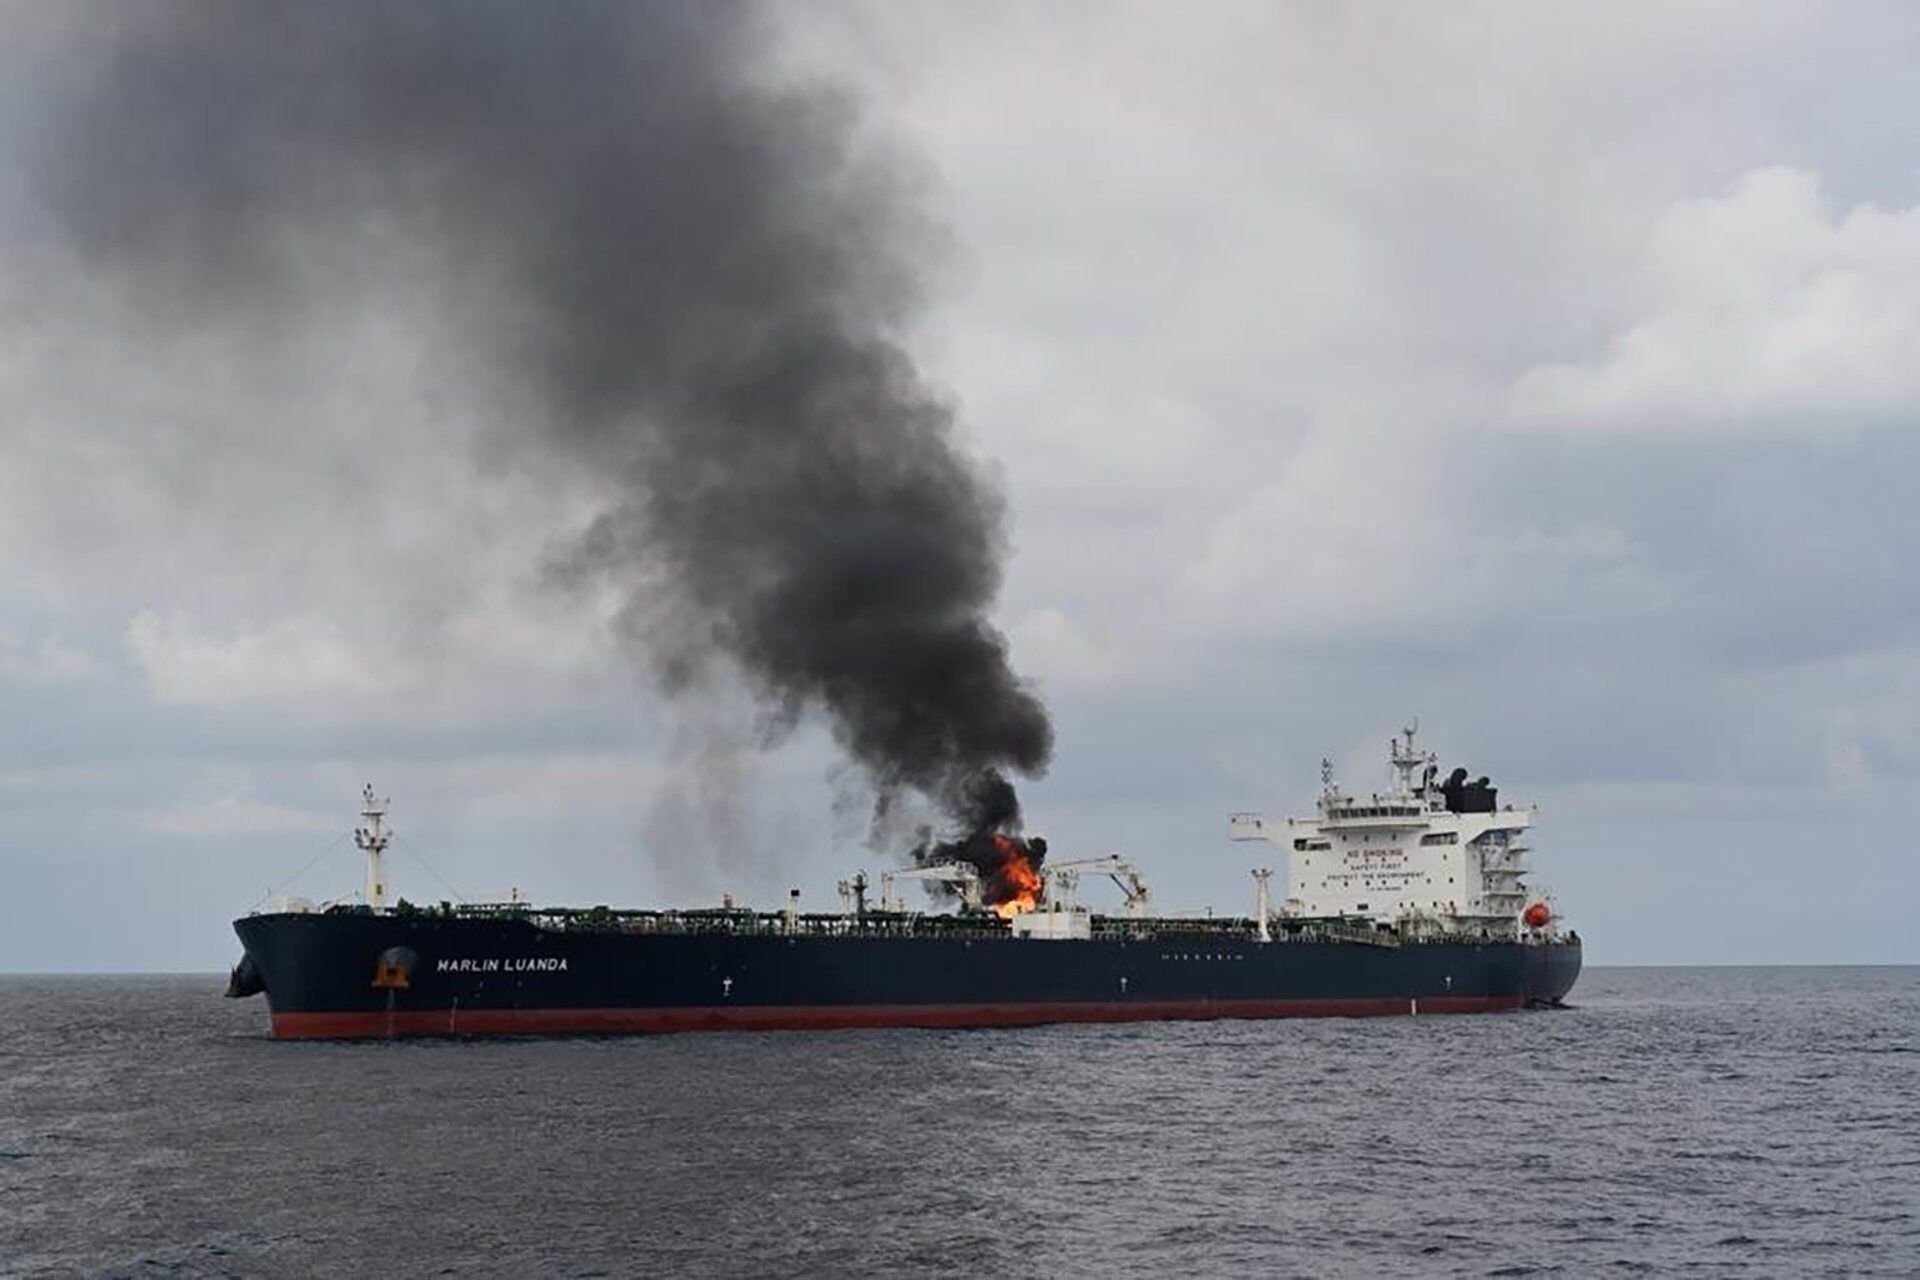 El buque Marlin Luanda se incendió en el Golfo de Adén después de que, según informes, fue alcanzado por un misil antibuque disparado desde una zona controlada por los hutíes en Yemen. (Europa Press/Contacto/Indian Navy)